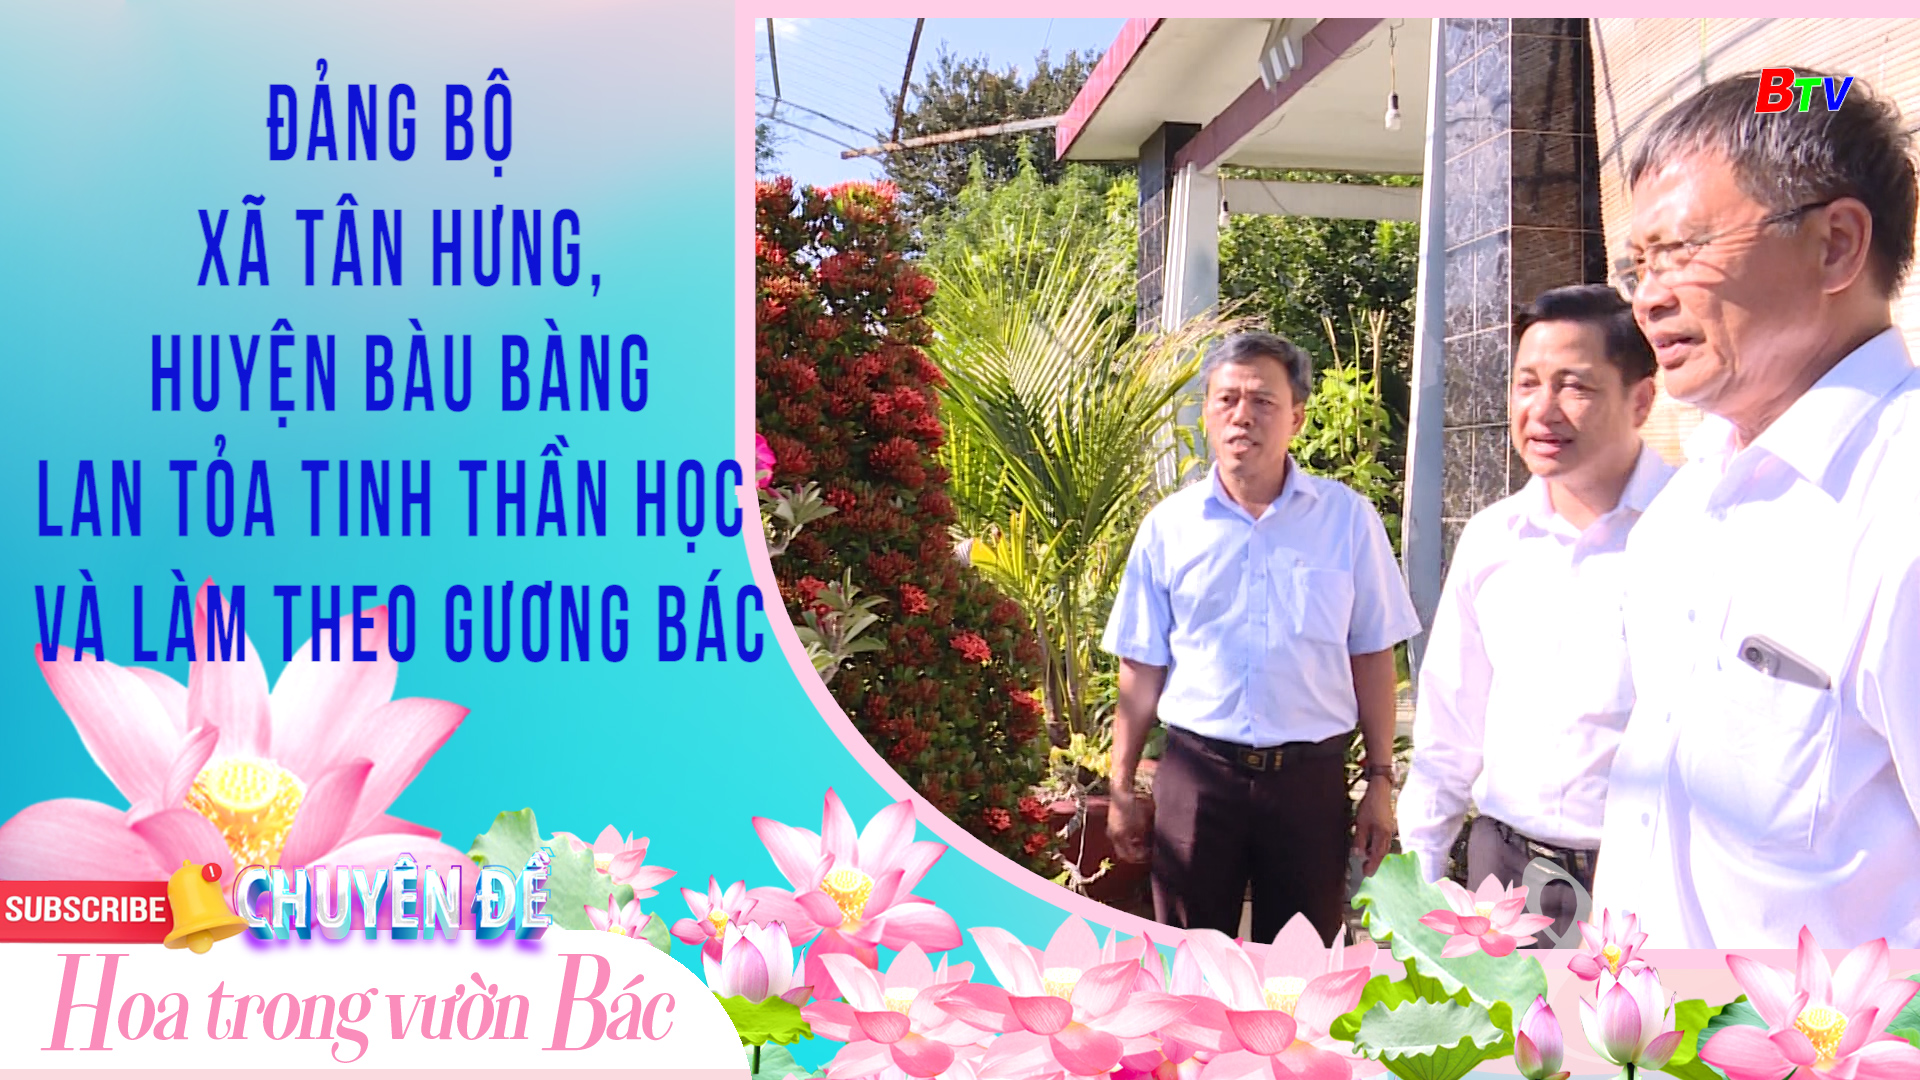 Đảng bộ xã Tân Hưng, huyện Bàu Bàng lan tỏa tinh thần học và làm theo gương Bác